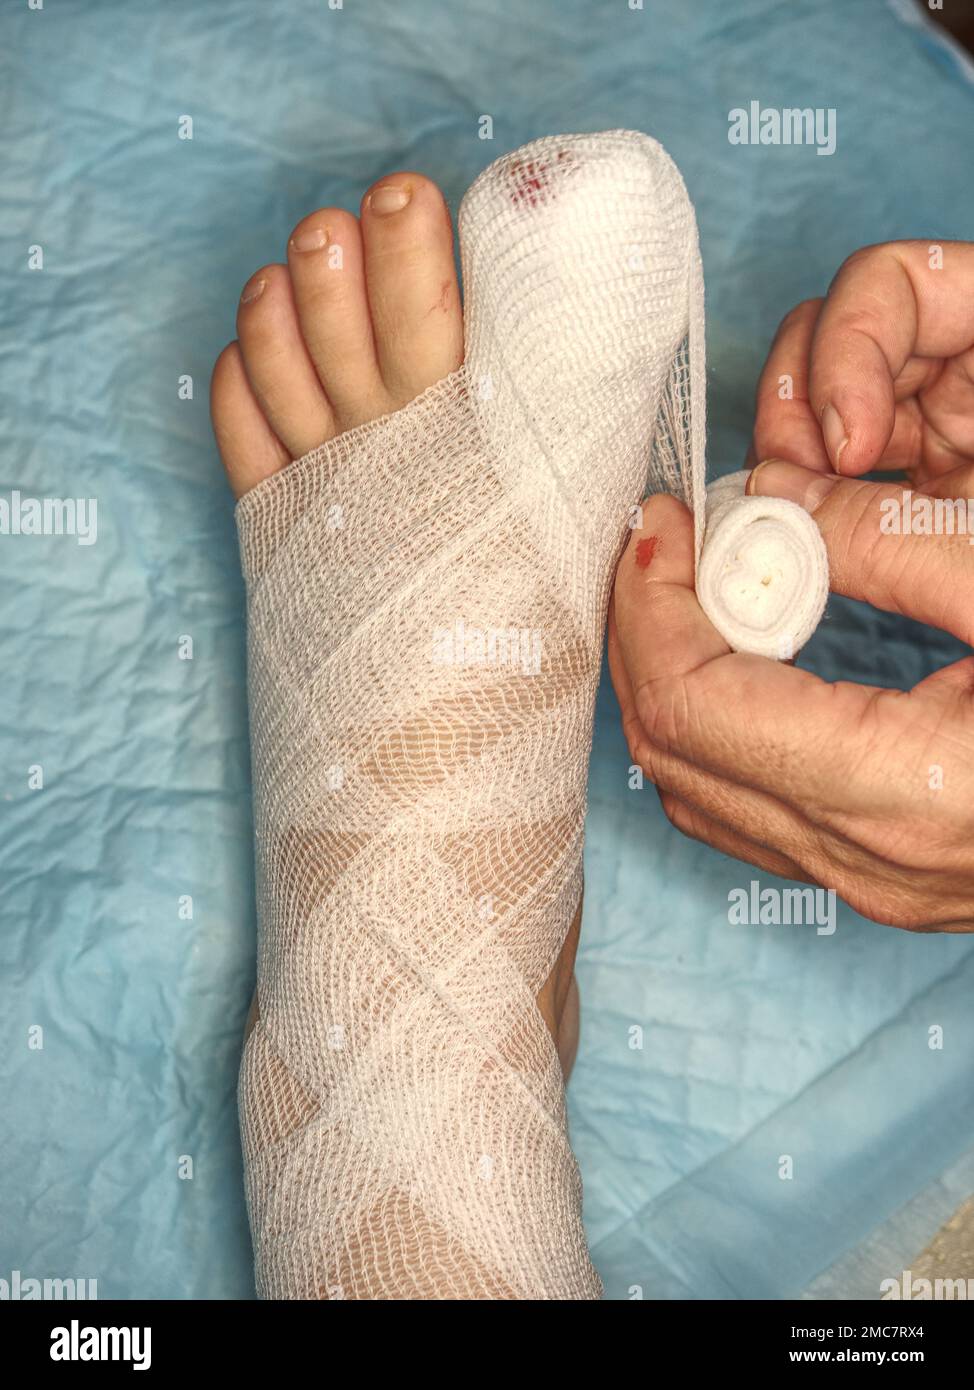 Fuß große Zehe Bandage verletzte Füße in der medizinischen Klinik